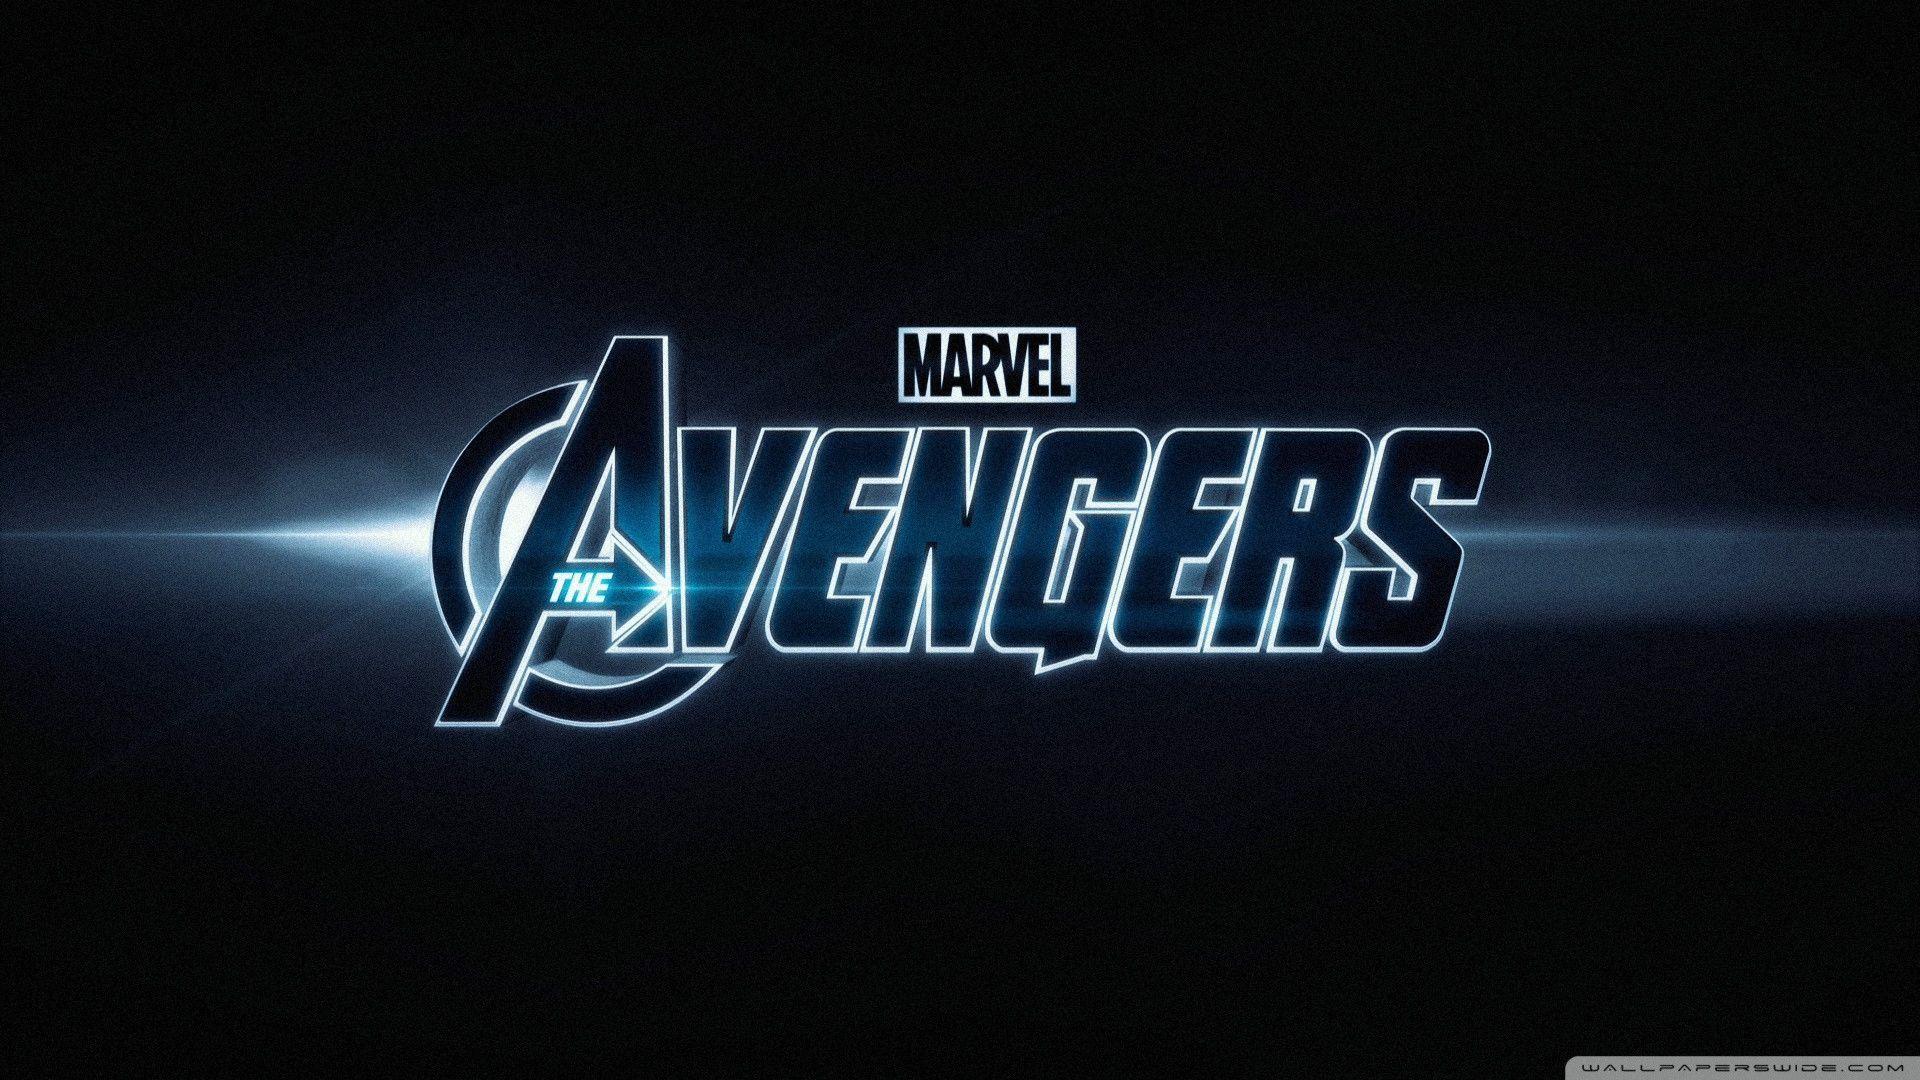 Marvel Avengers Wallpaper. The Avengers Wallpaper HD. Avengers